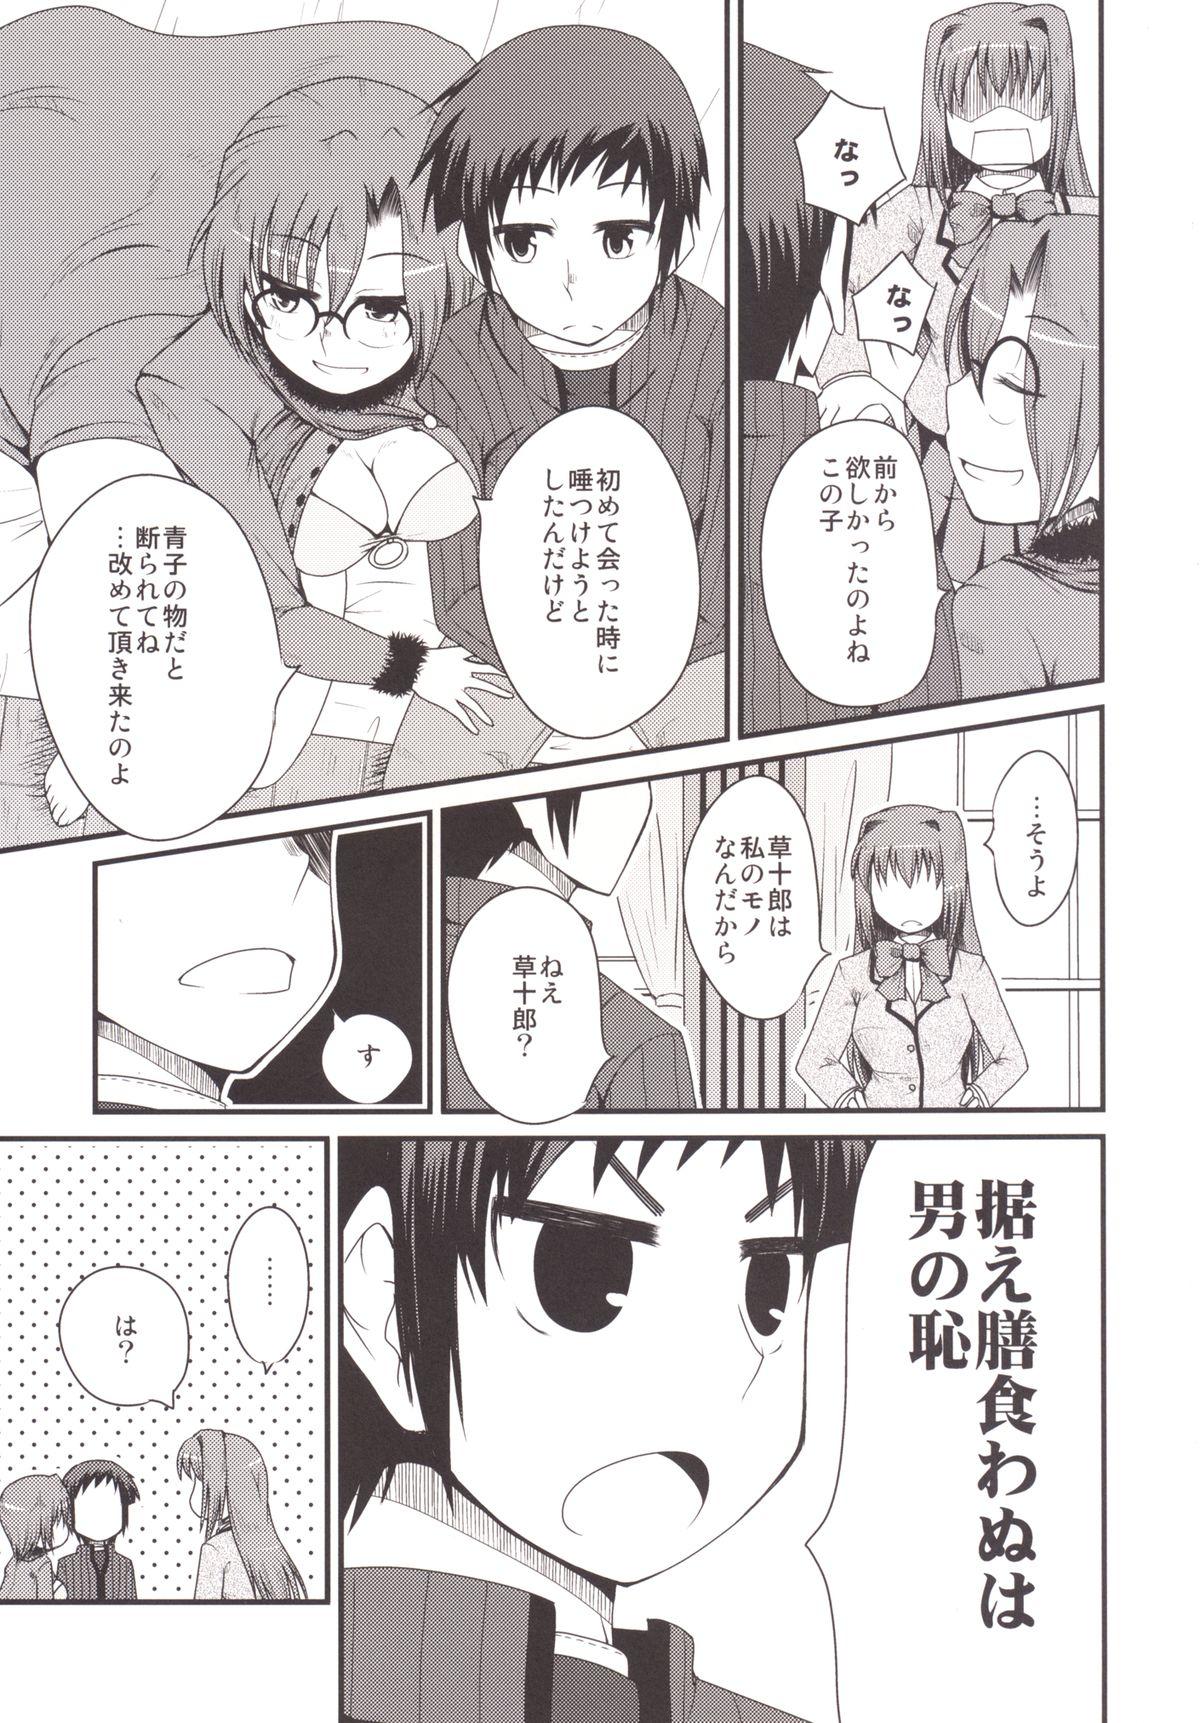 Oldyoung Ittsu Main 2 - Mahou tsukai no yoru Classroom - Page 7